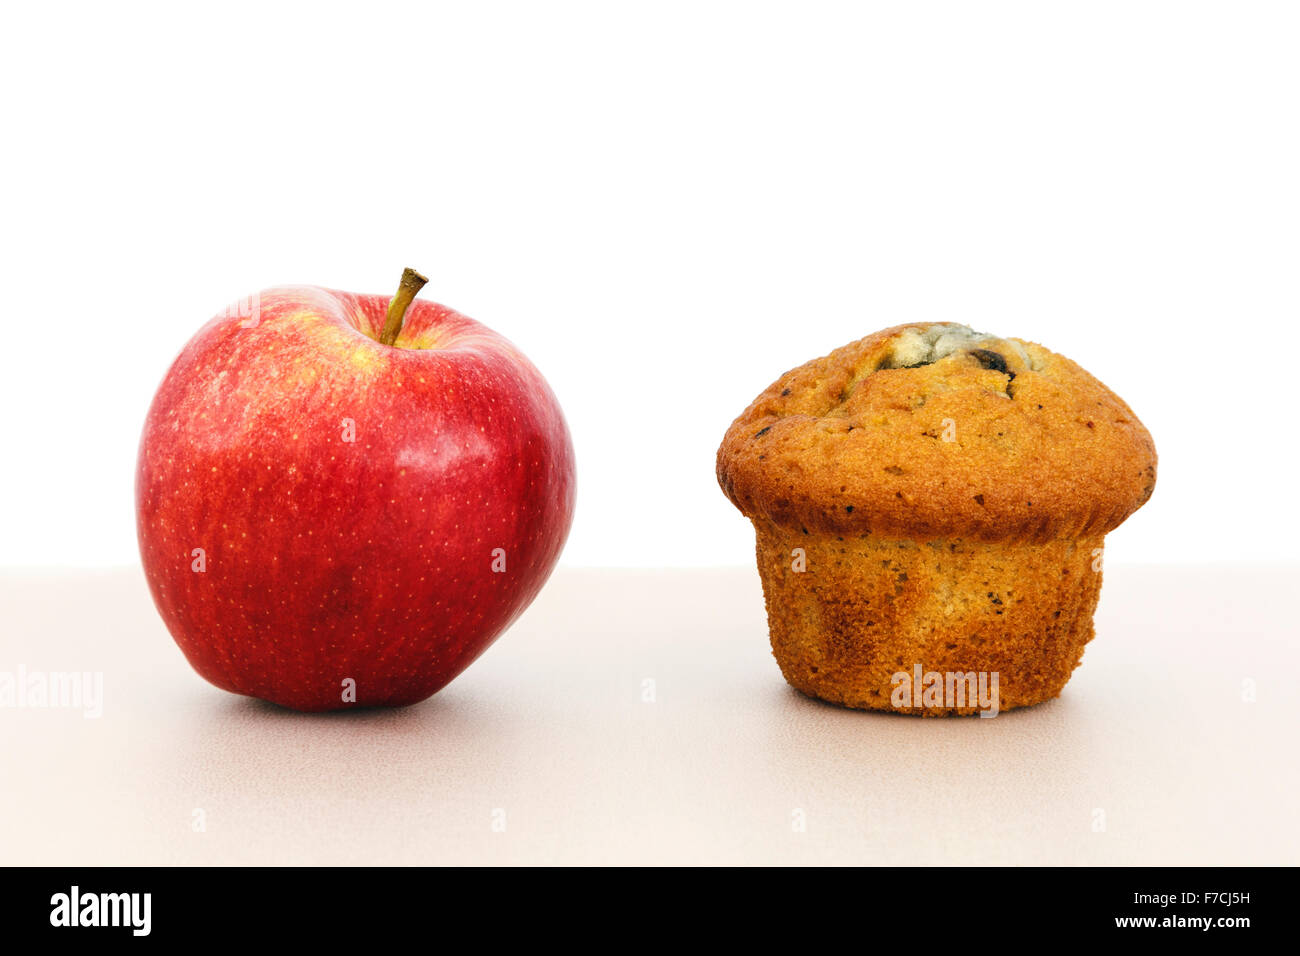 Rosy red apple cibo sano opzione e un muffin torta malsana snack su un piano portapaziente per illustrare cibi alternativi di salute concetto di scelta. Inghilterra, Regno Unito Foto Stock